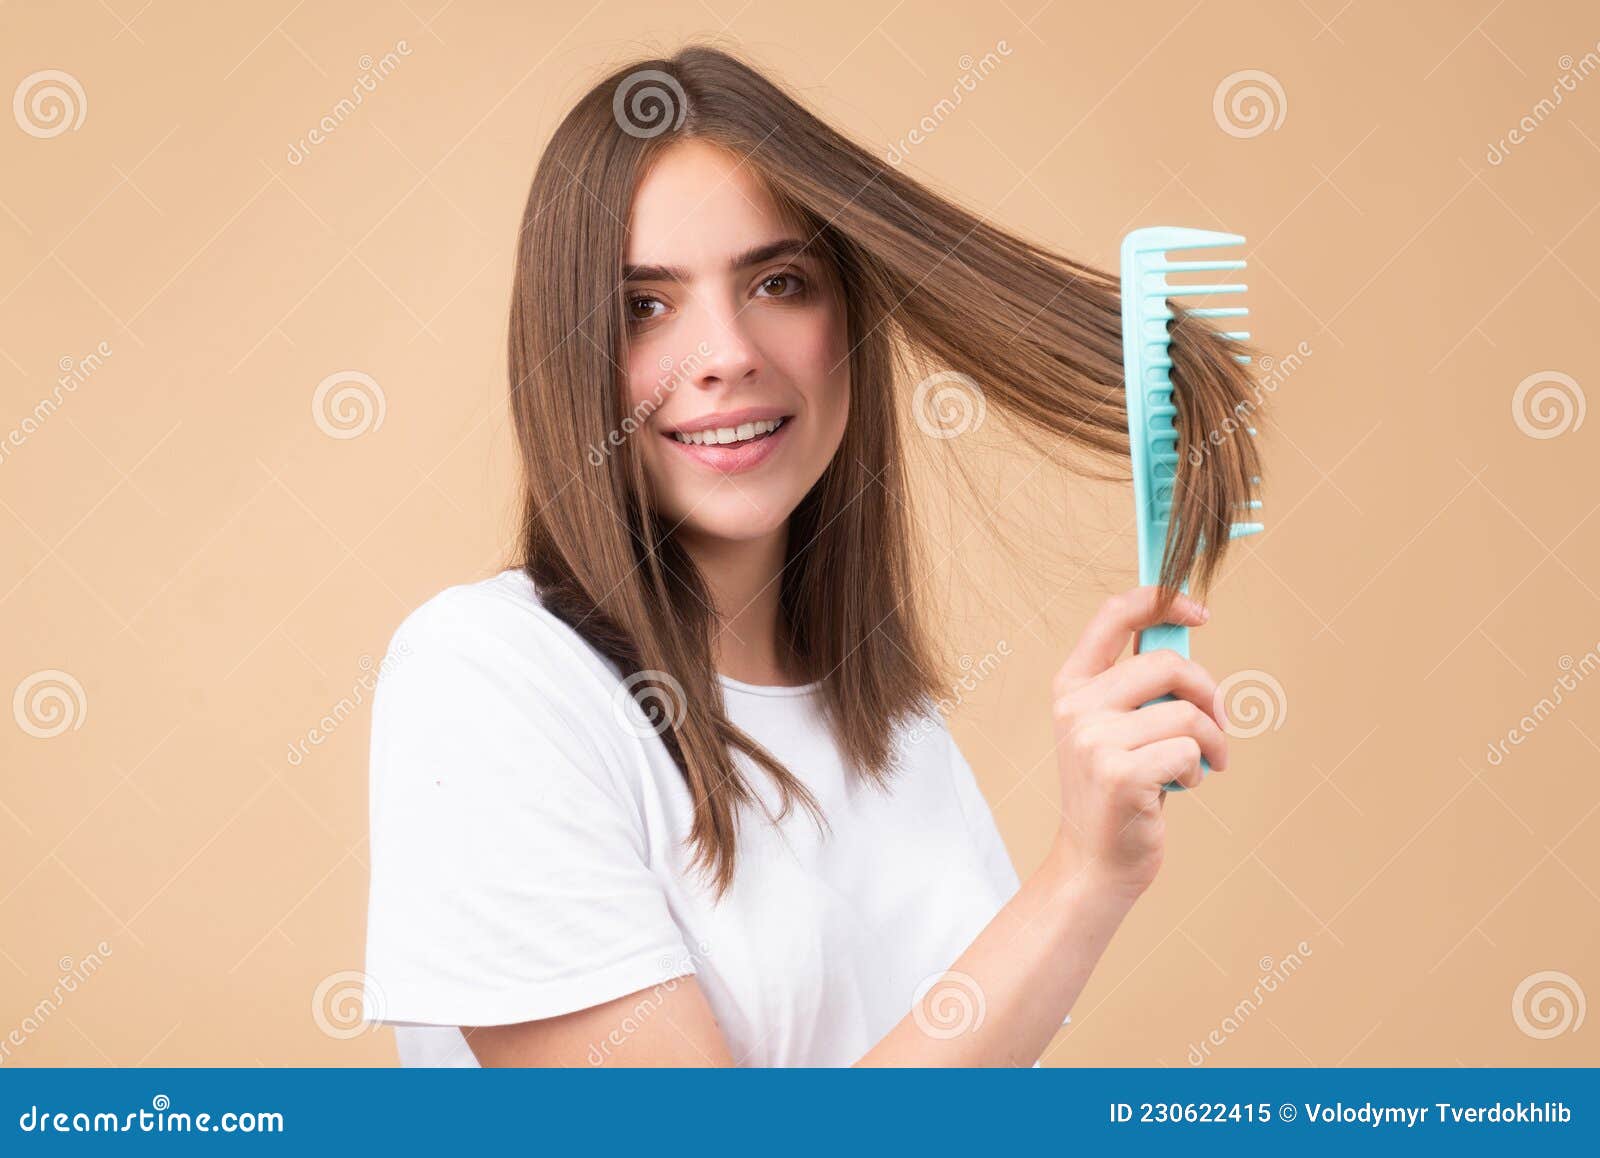 长发女孩梳着木梳，横卧，特写 库存图片. 图片 包括有 发型, 浴室, 关心, 成为秃头的, 水平, 关闭 - 158461209